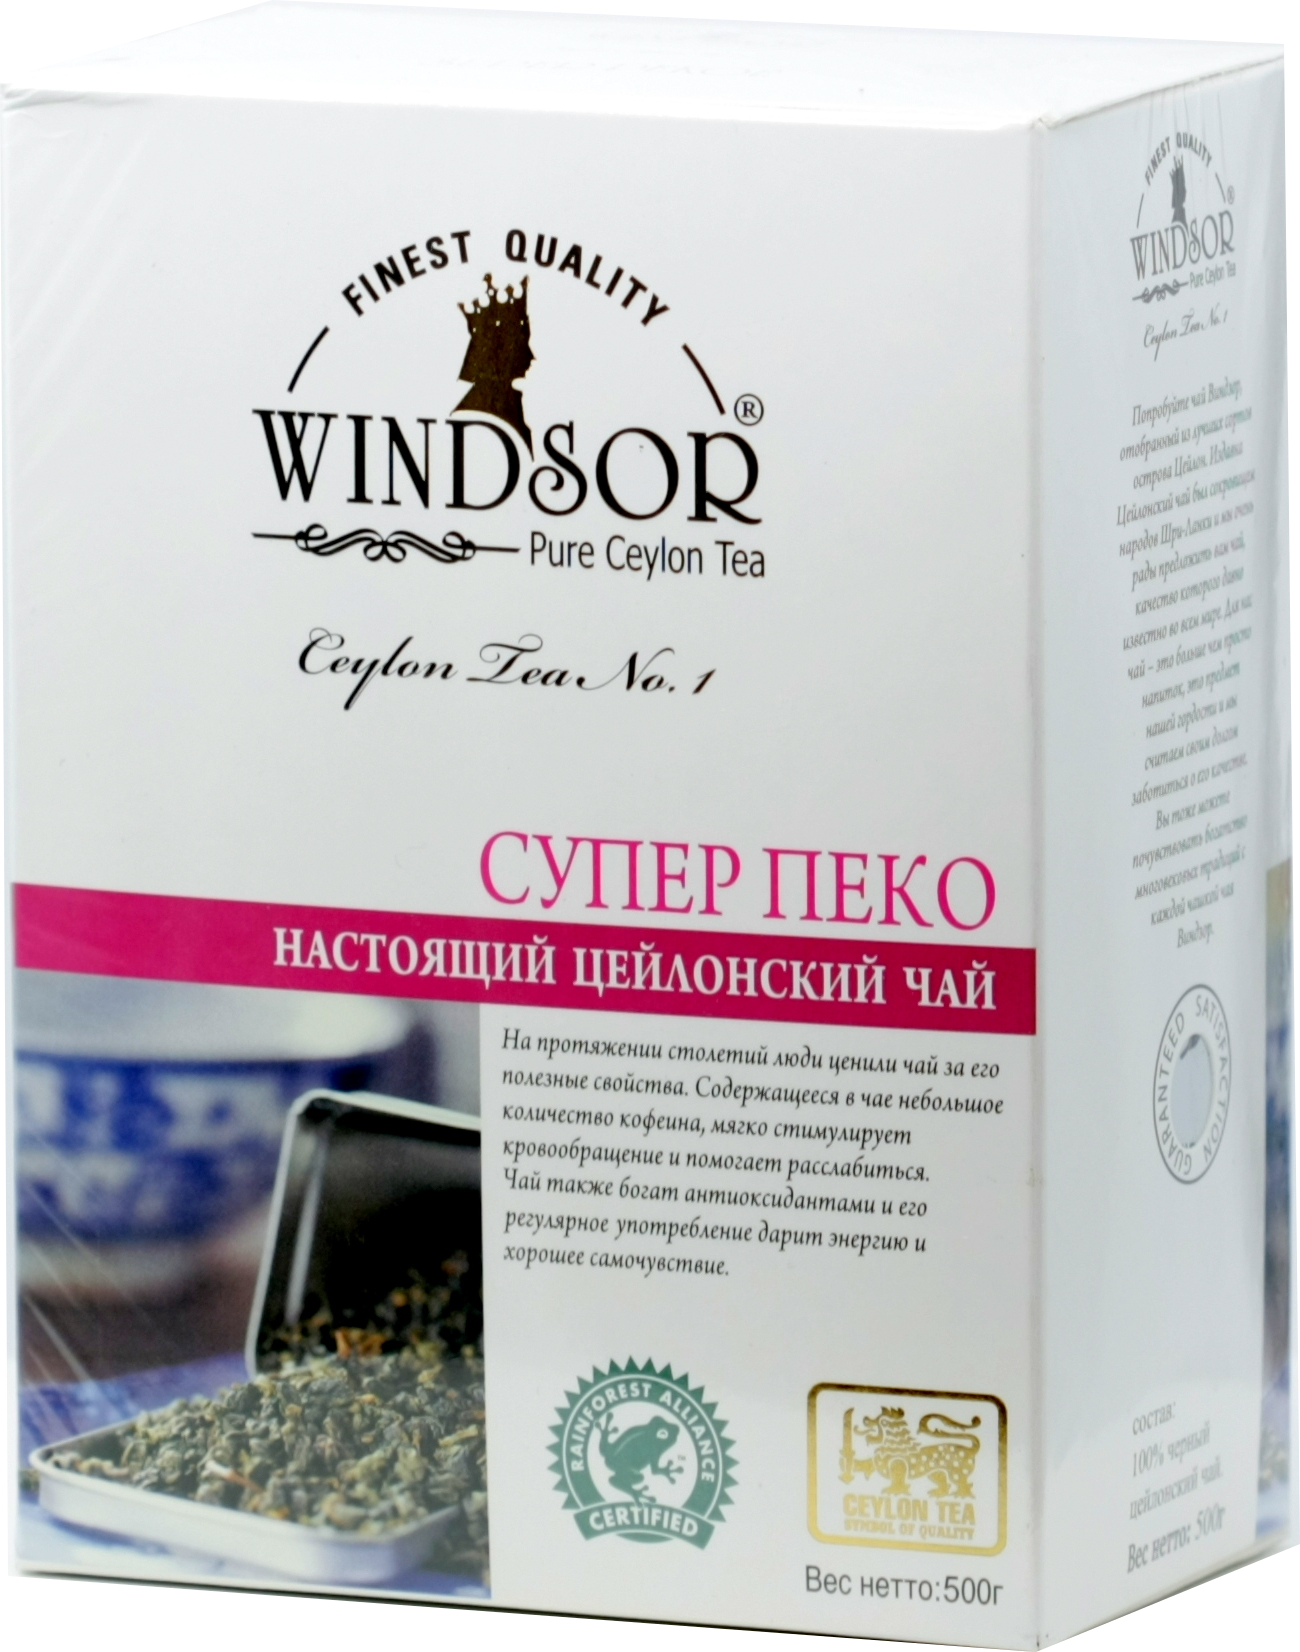 Купить чай пеко. Чай Windsor super Pekoe. Чай Unitea картон супер Пекое 100г. Черный чай супер Пеко 500 гр. Unitea чай черный Unitea Pekoe 100г.